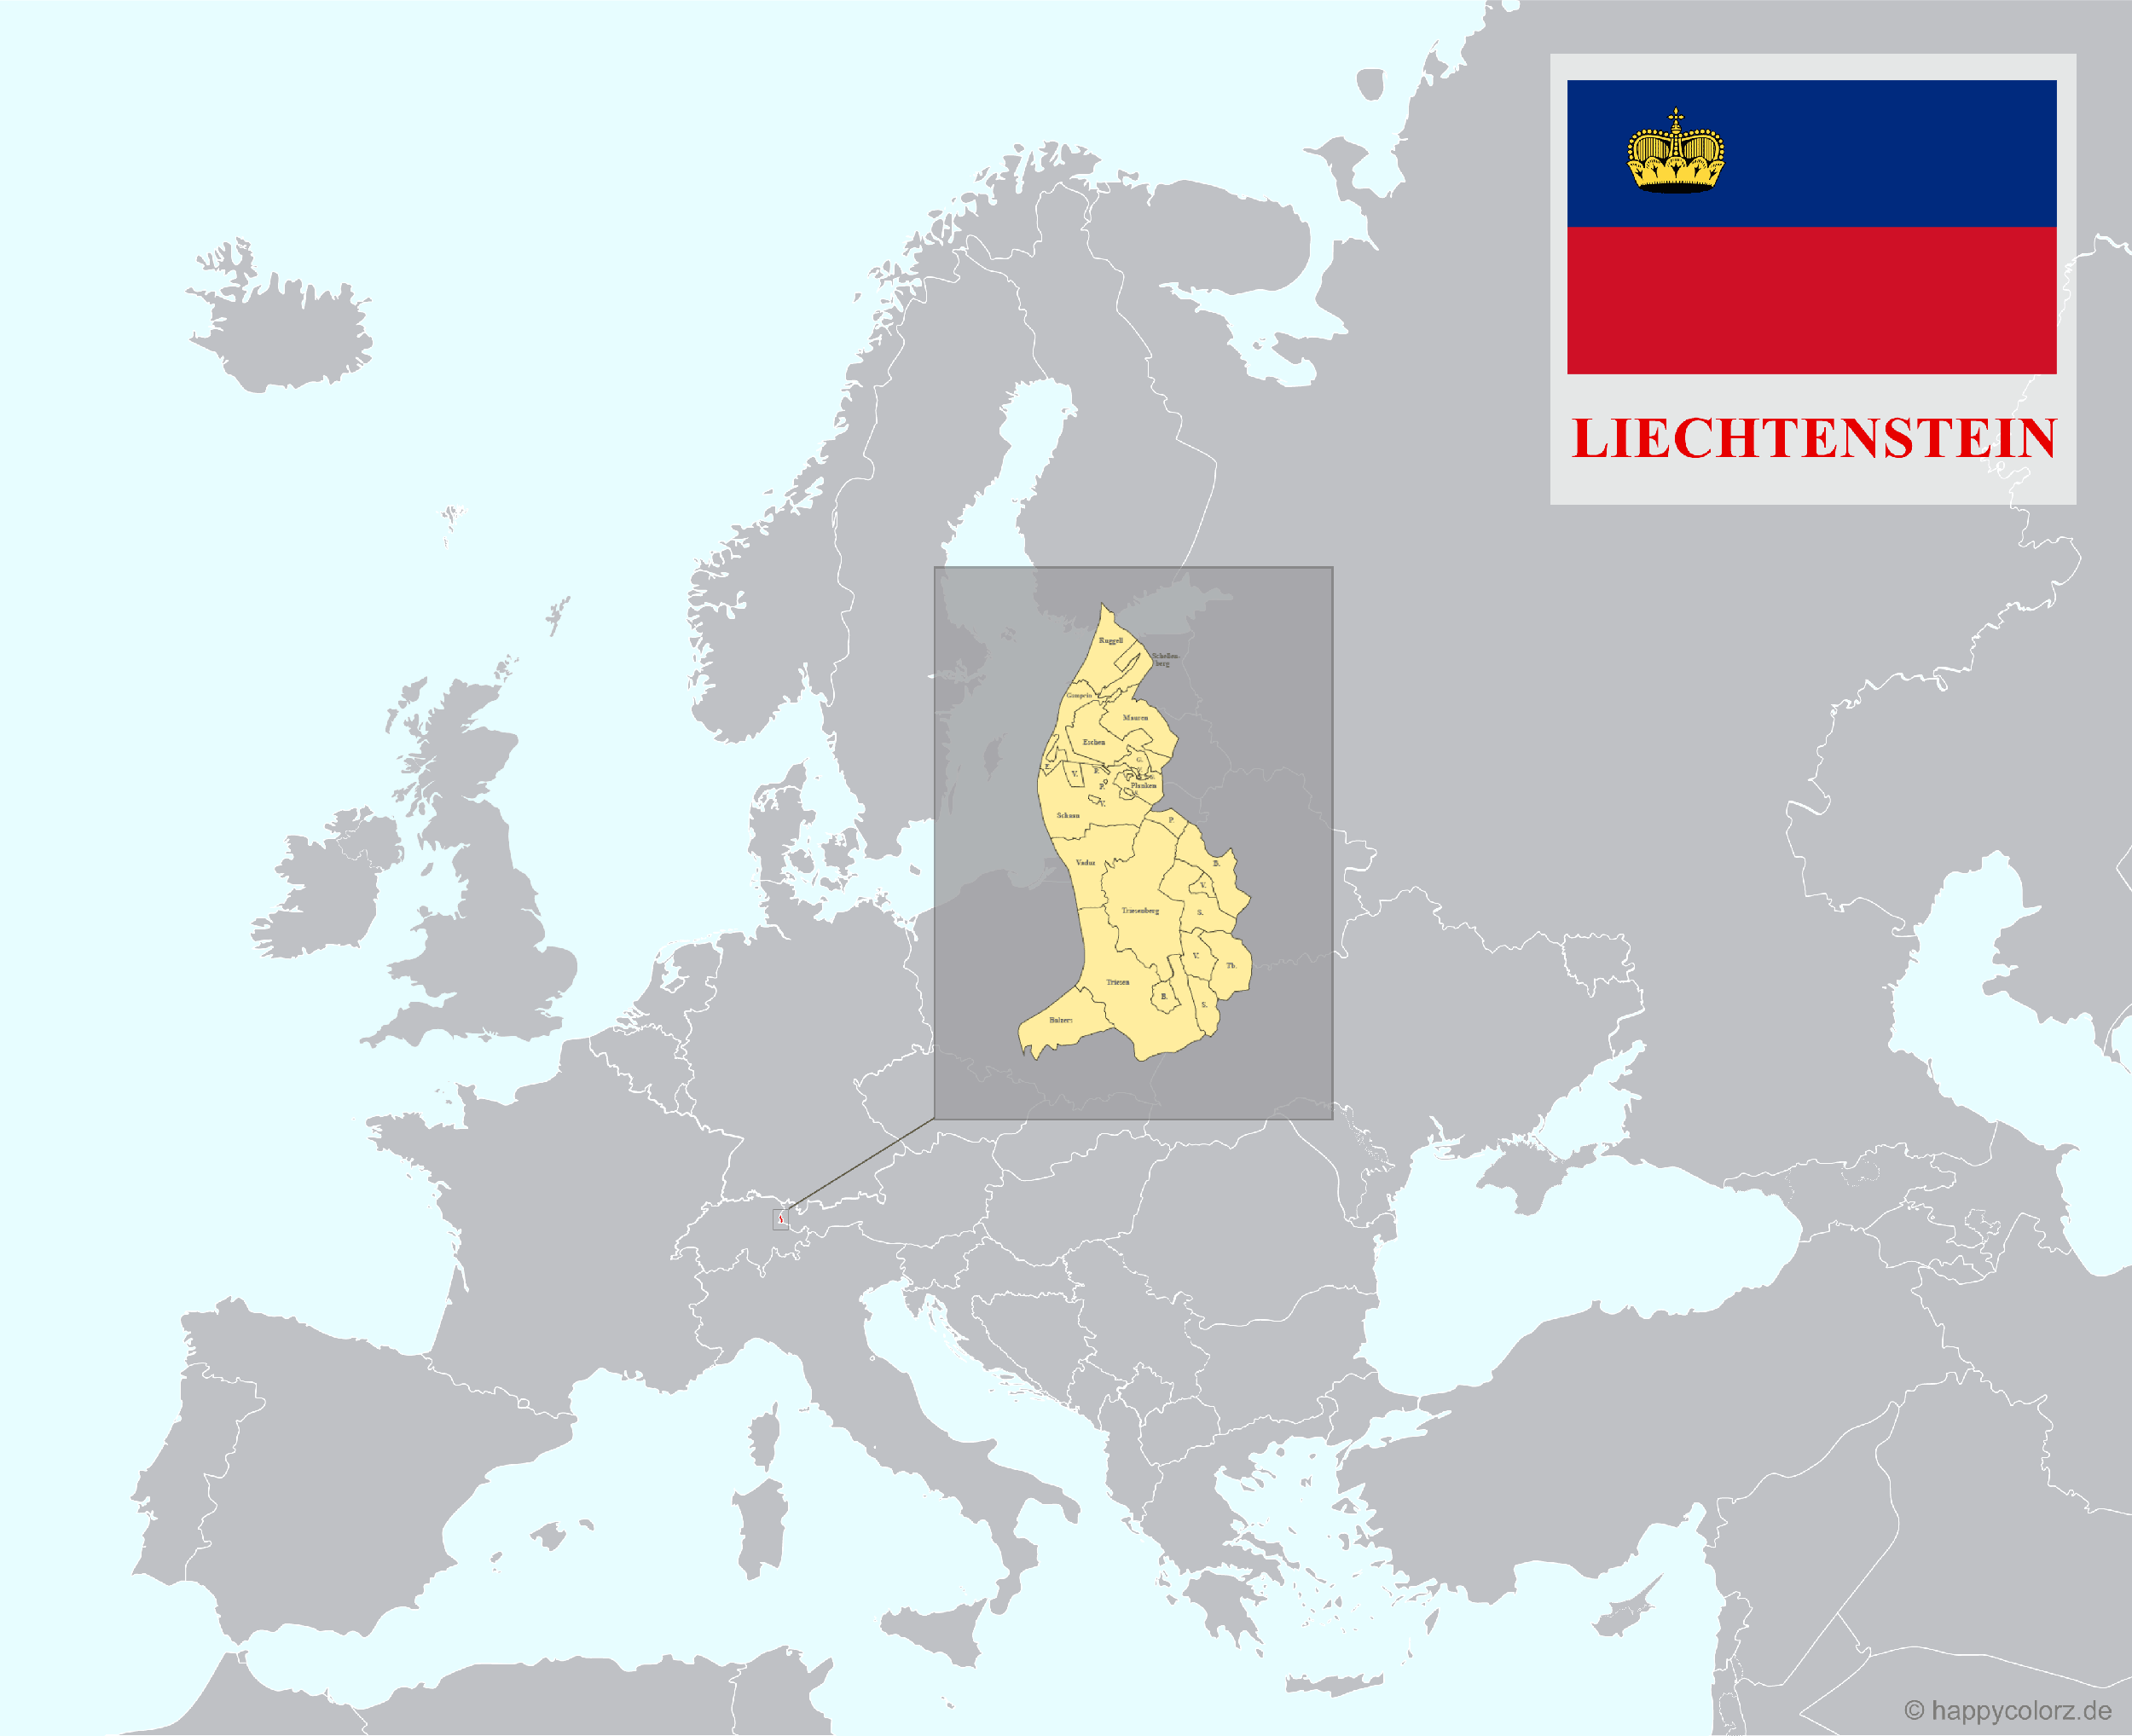 Europakarte mit Liechtenstein als hervorgehobenes Land